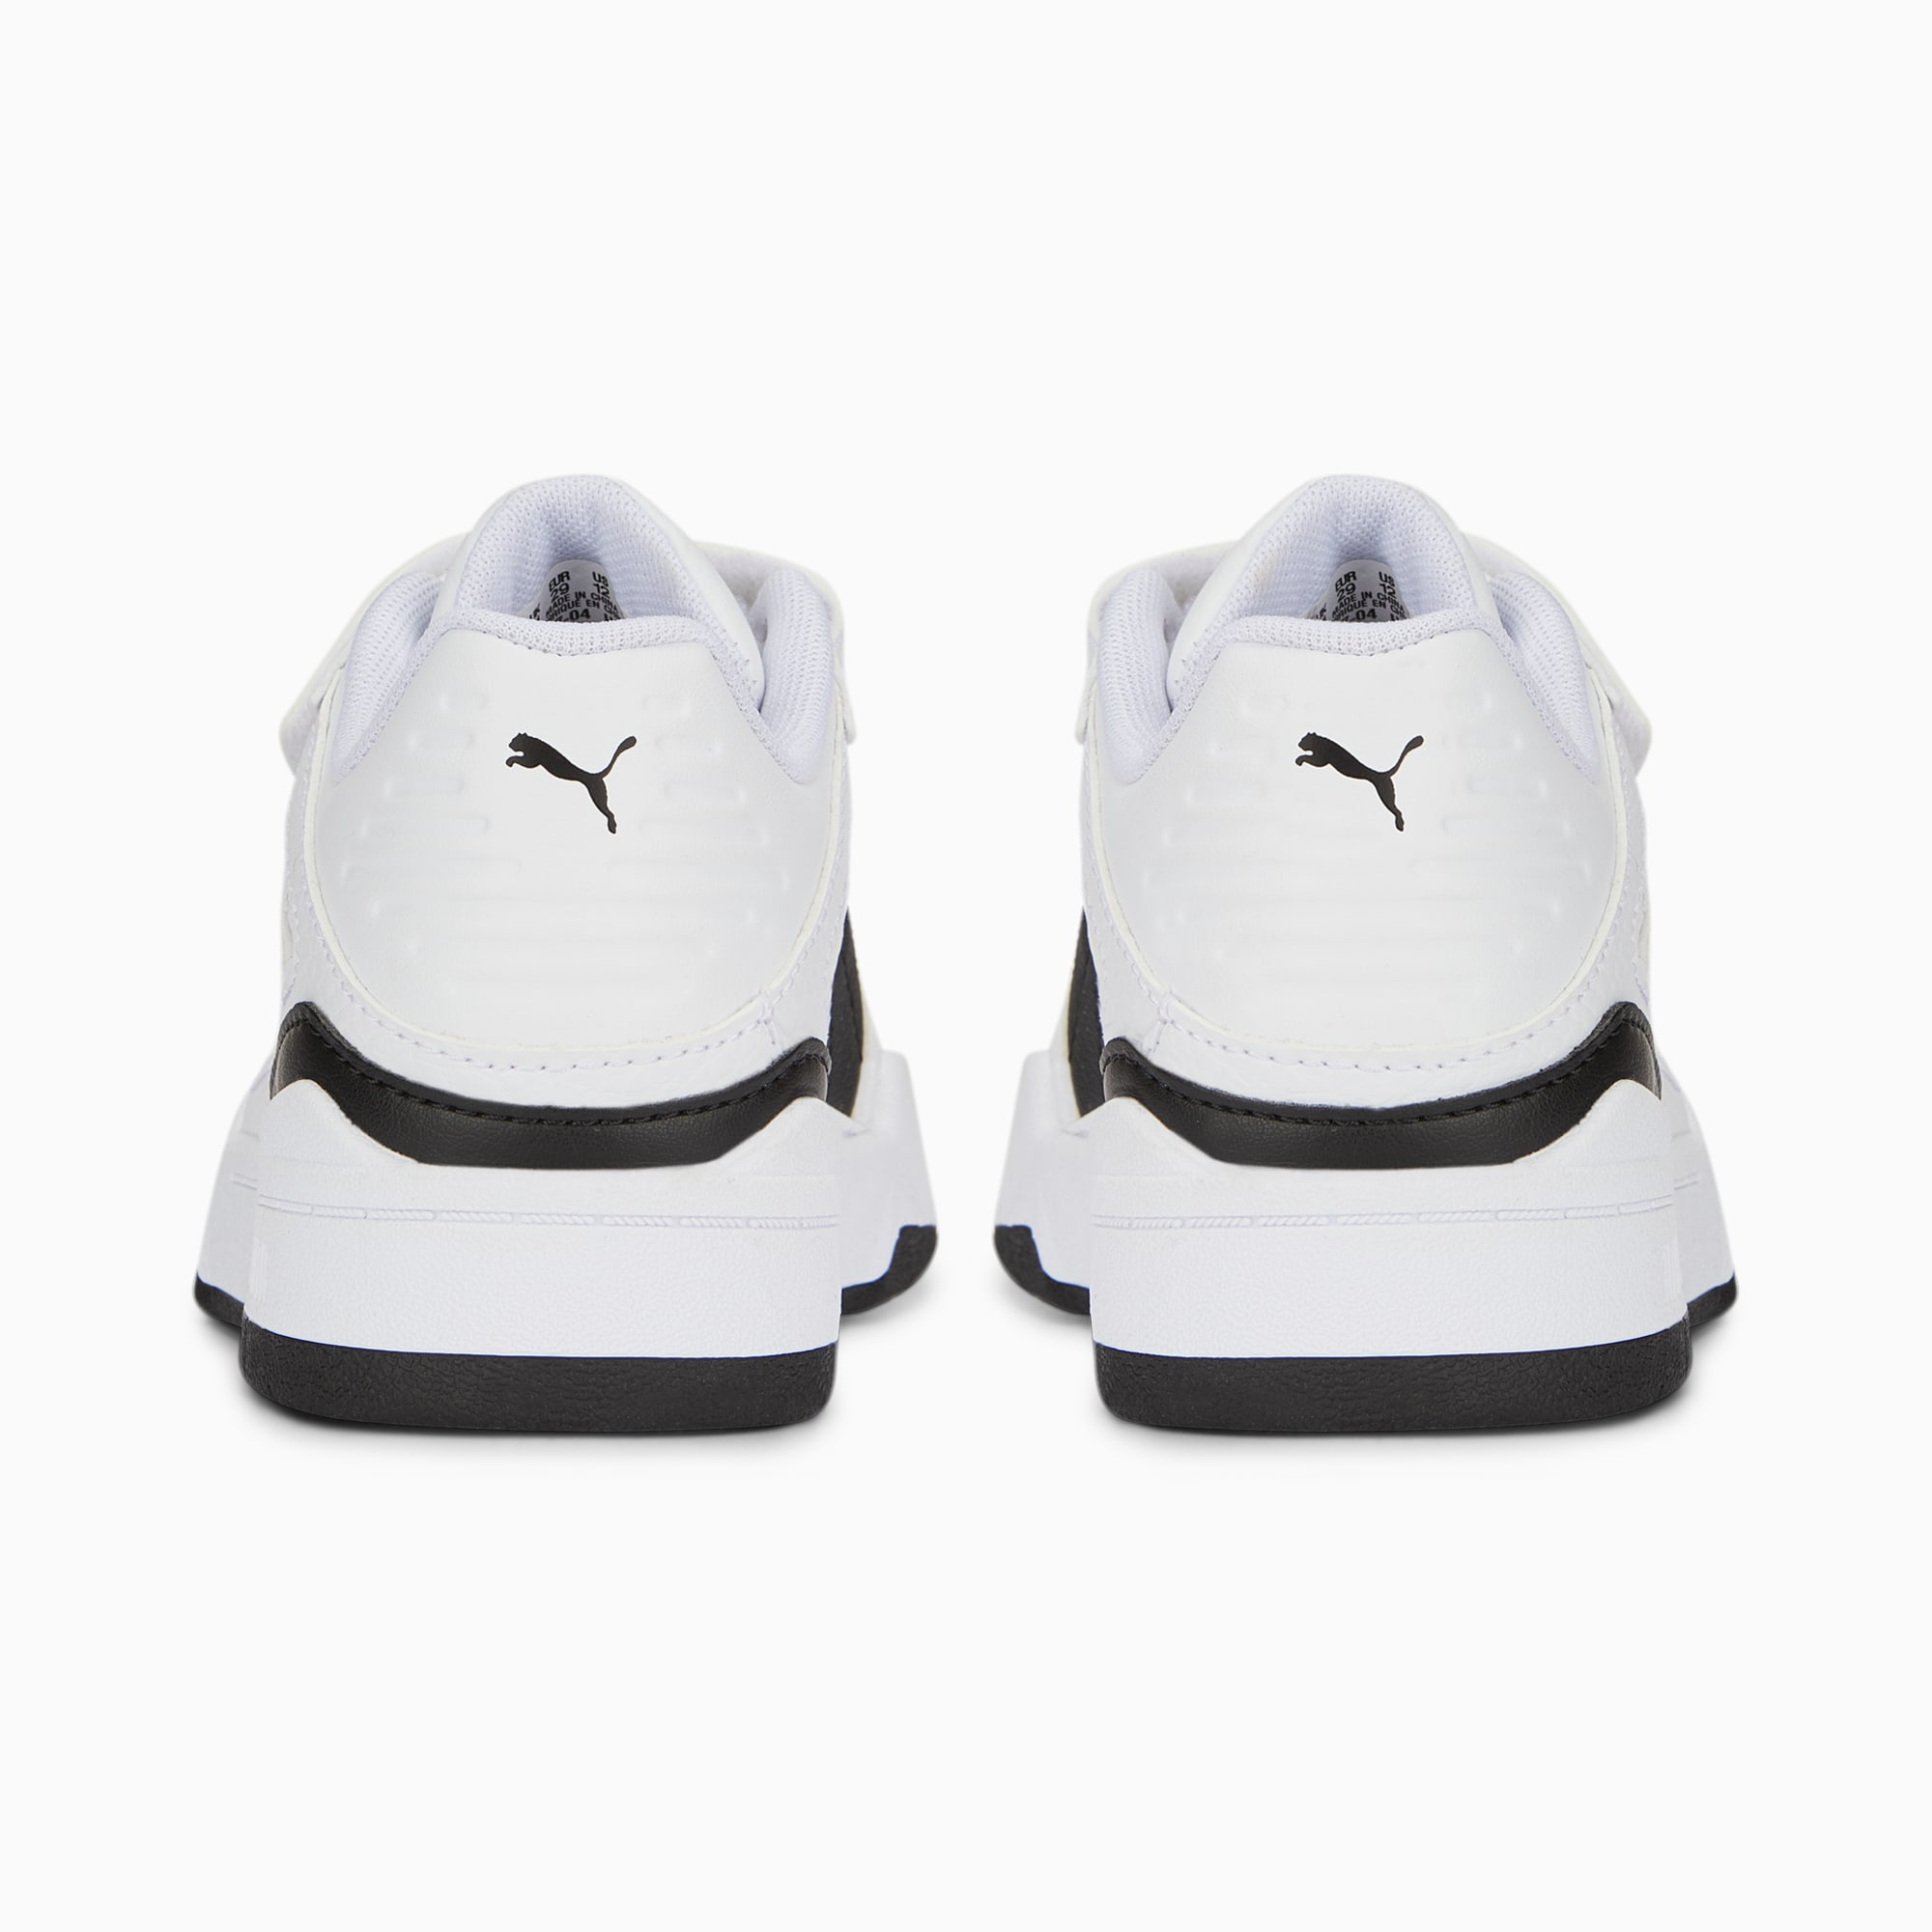 Scarpe Sneakers Slipstream In Pelle Con Chiusura Alternativa Bambino, Bianco/Nero/Altro